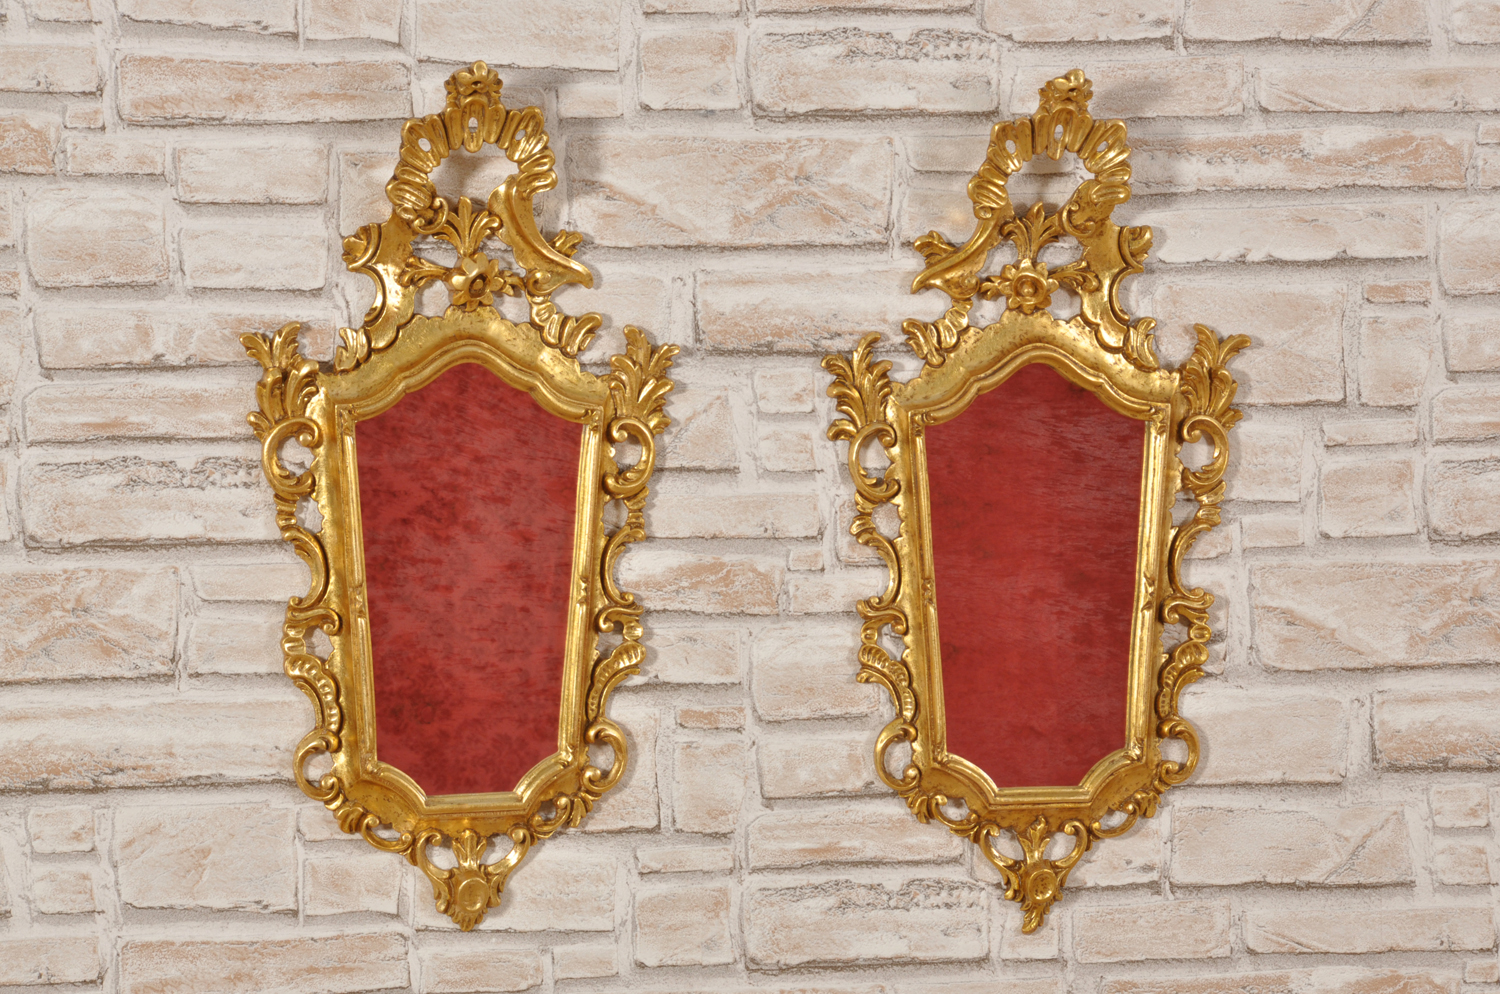 il brand di lusso Vangelista ha riprodotto una coppia di importanti specchiere veneziane ventole intagliate e scolpite a mano come il modello del XVIII secolo dorate in foglia oro patinato